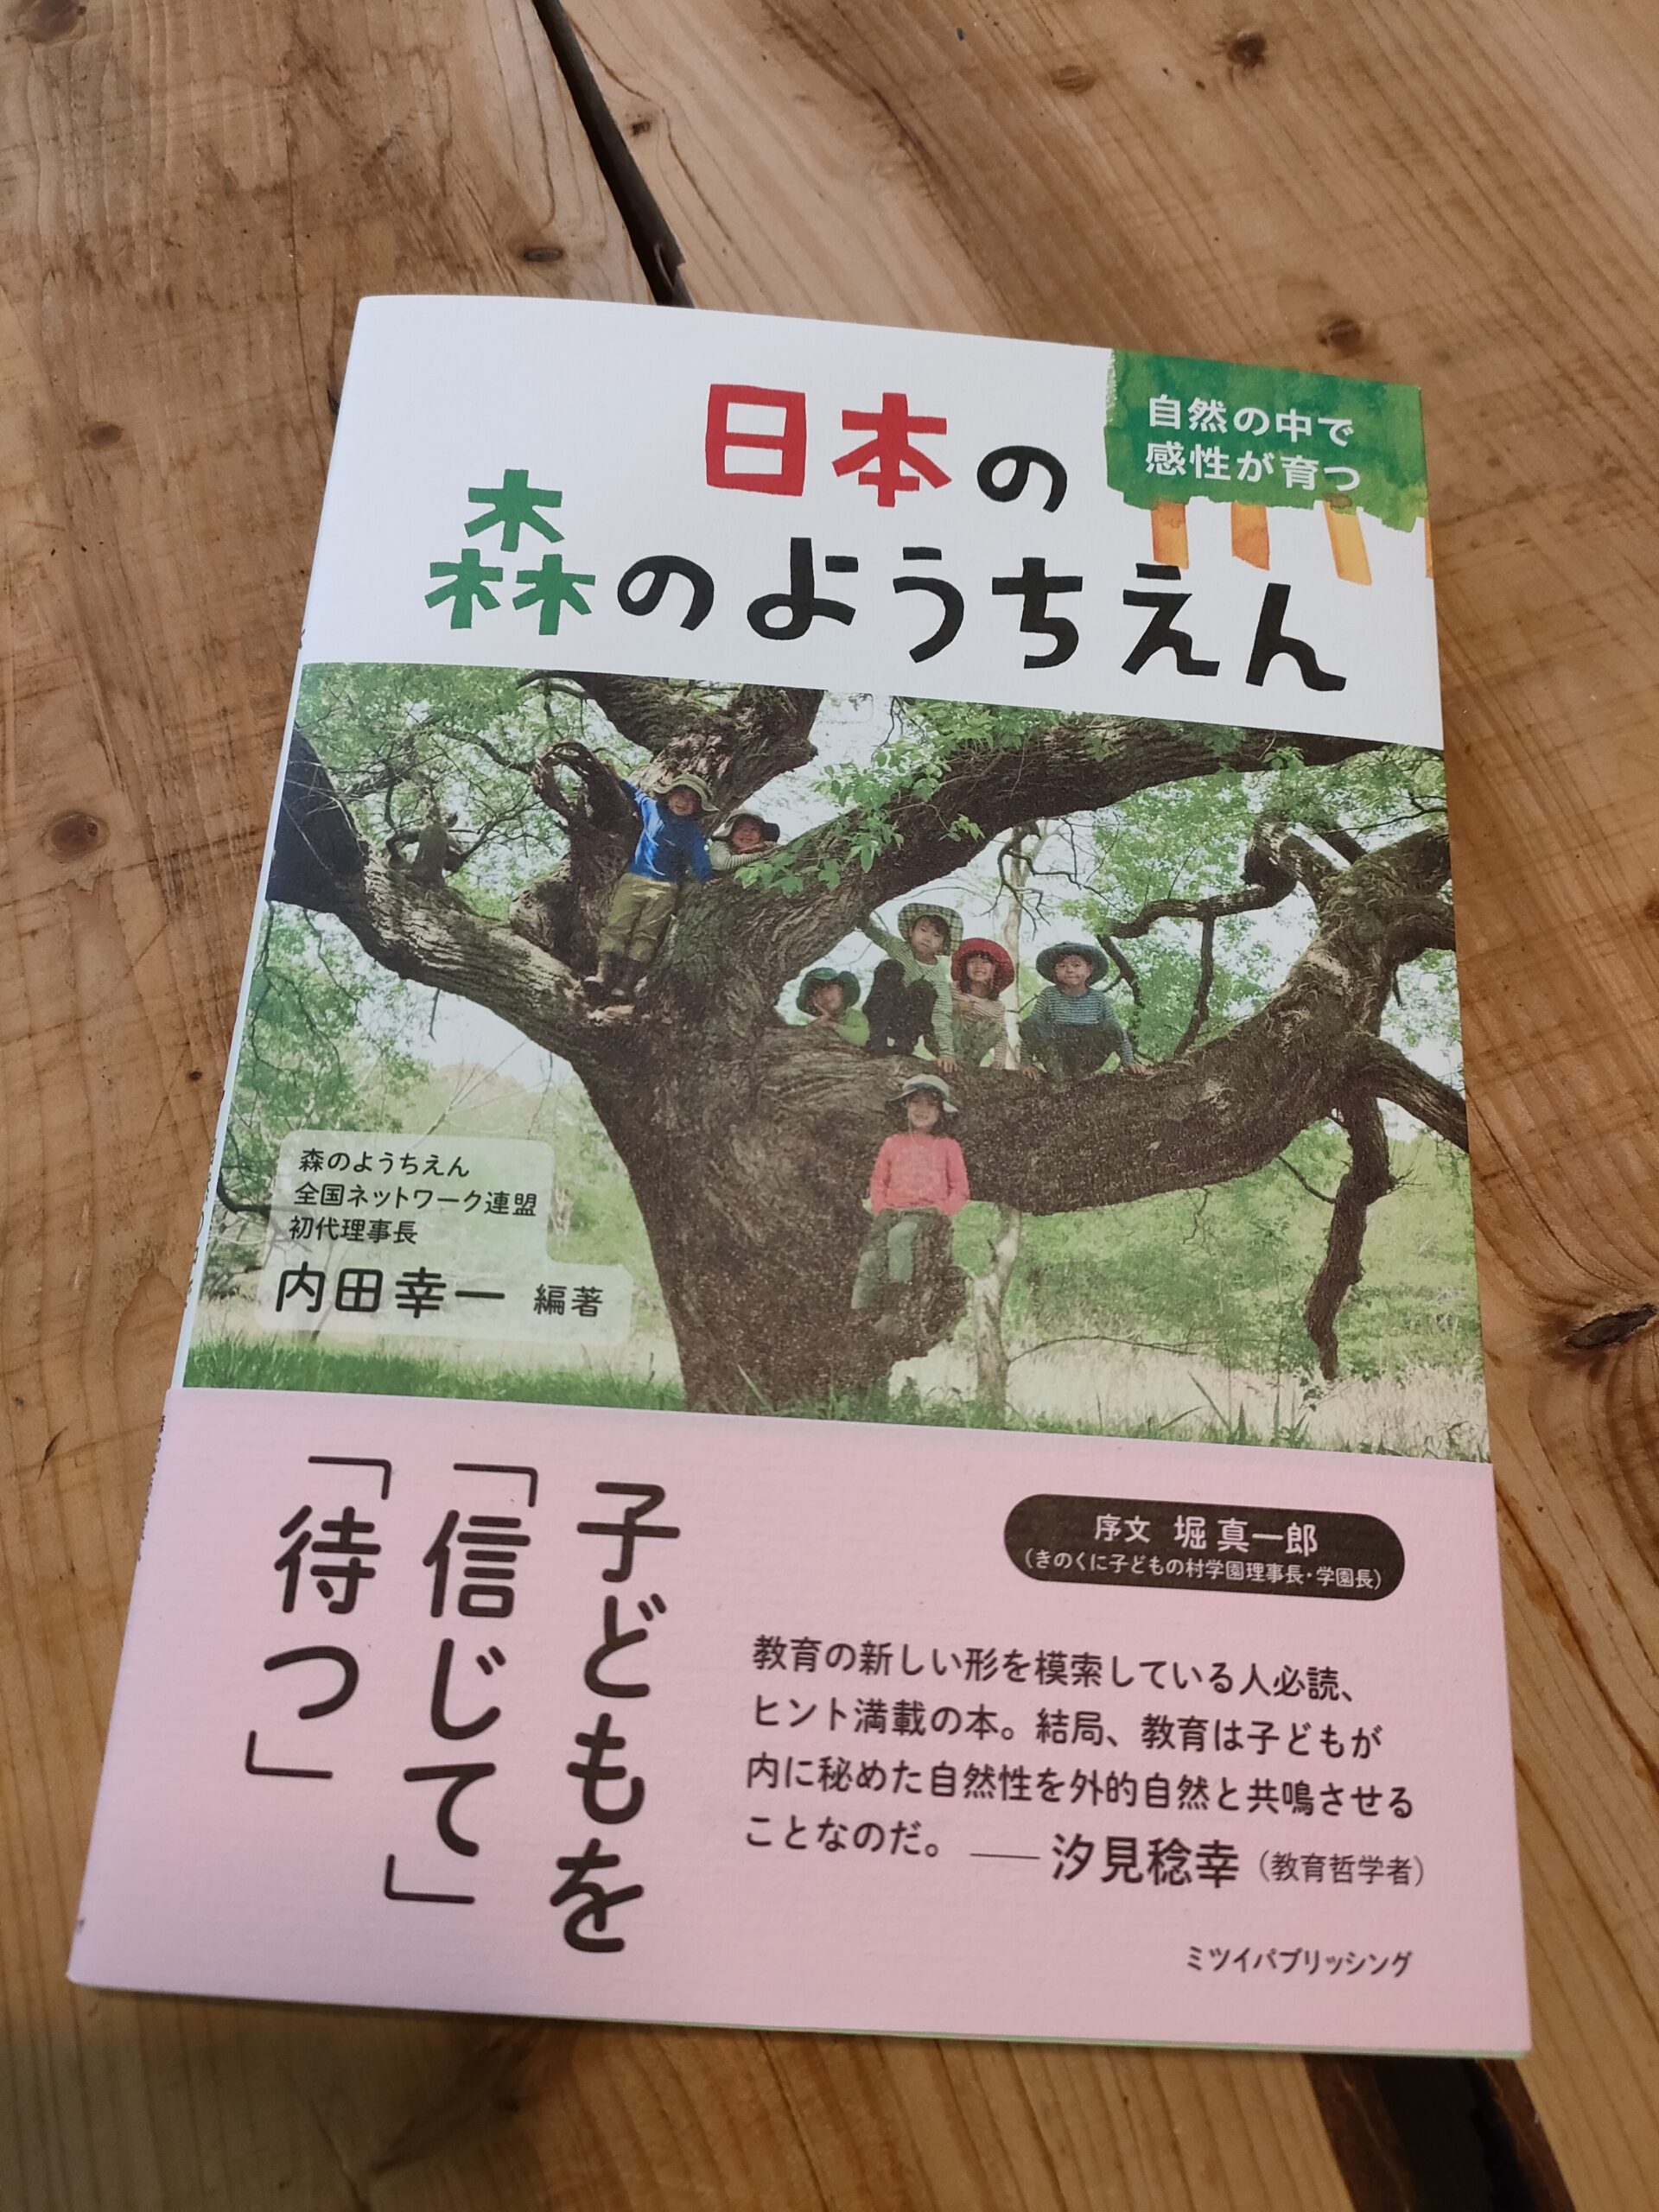 『日本の森のようちえん』が出版されました